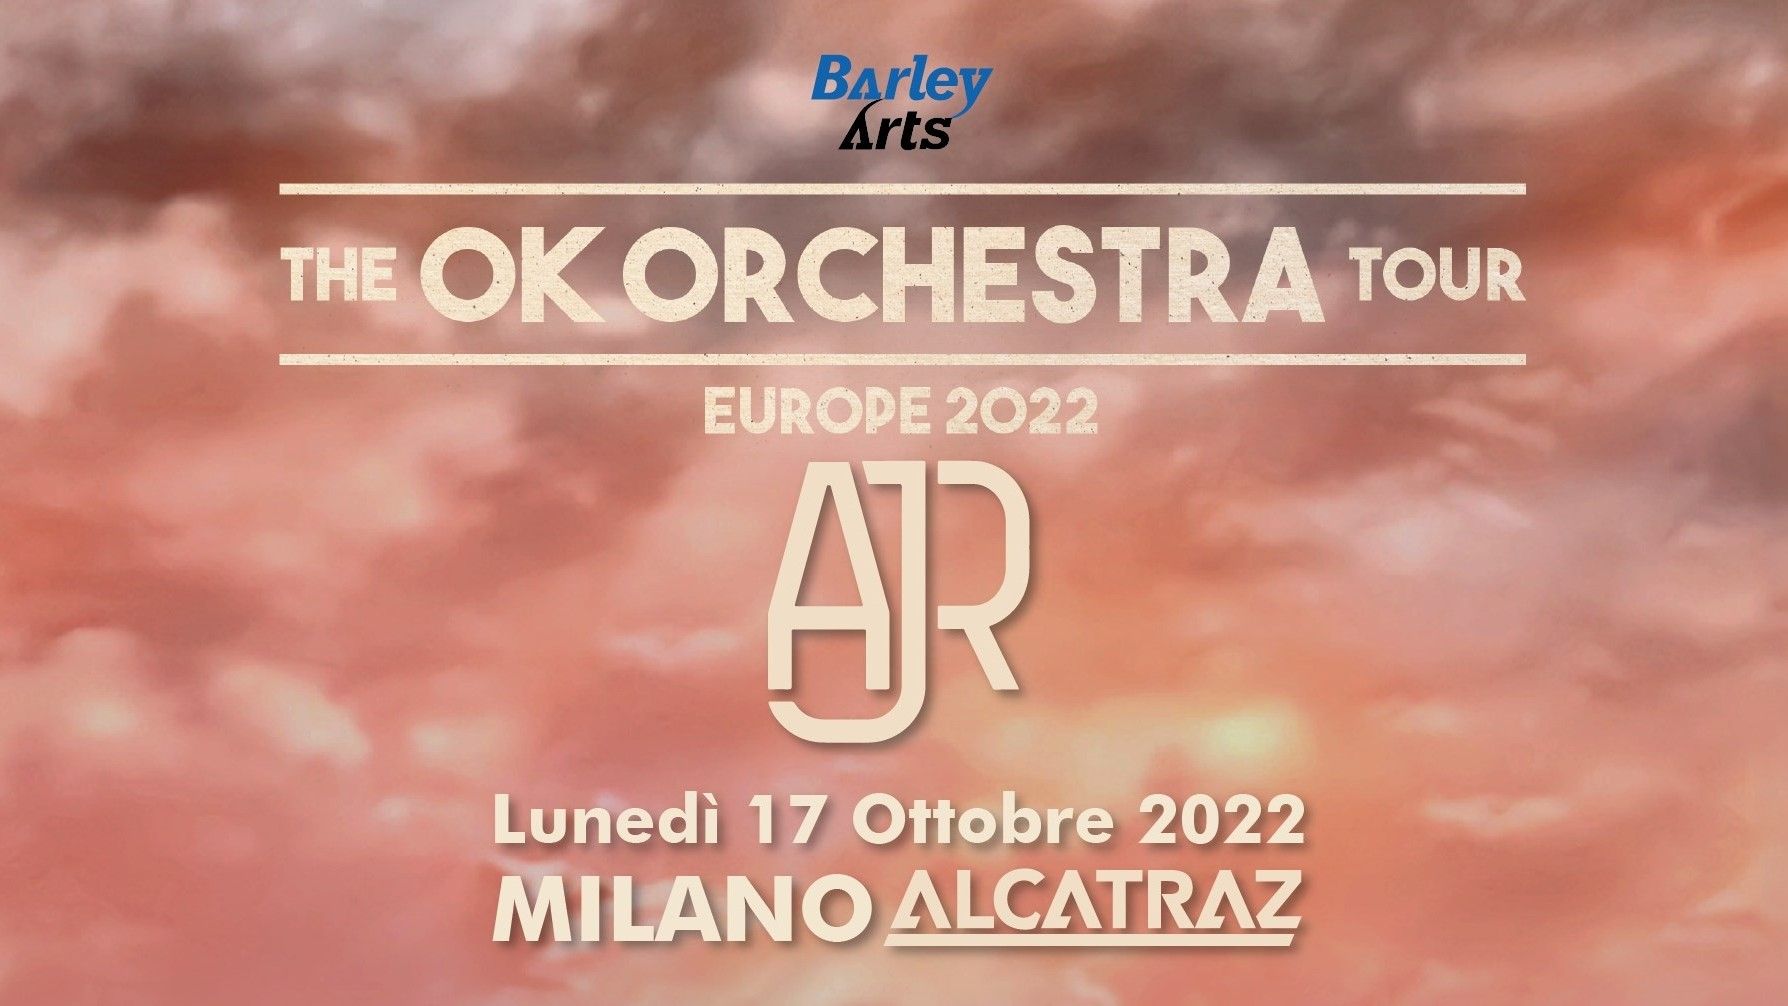 AJR | The OK Orchestra Tour